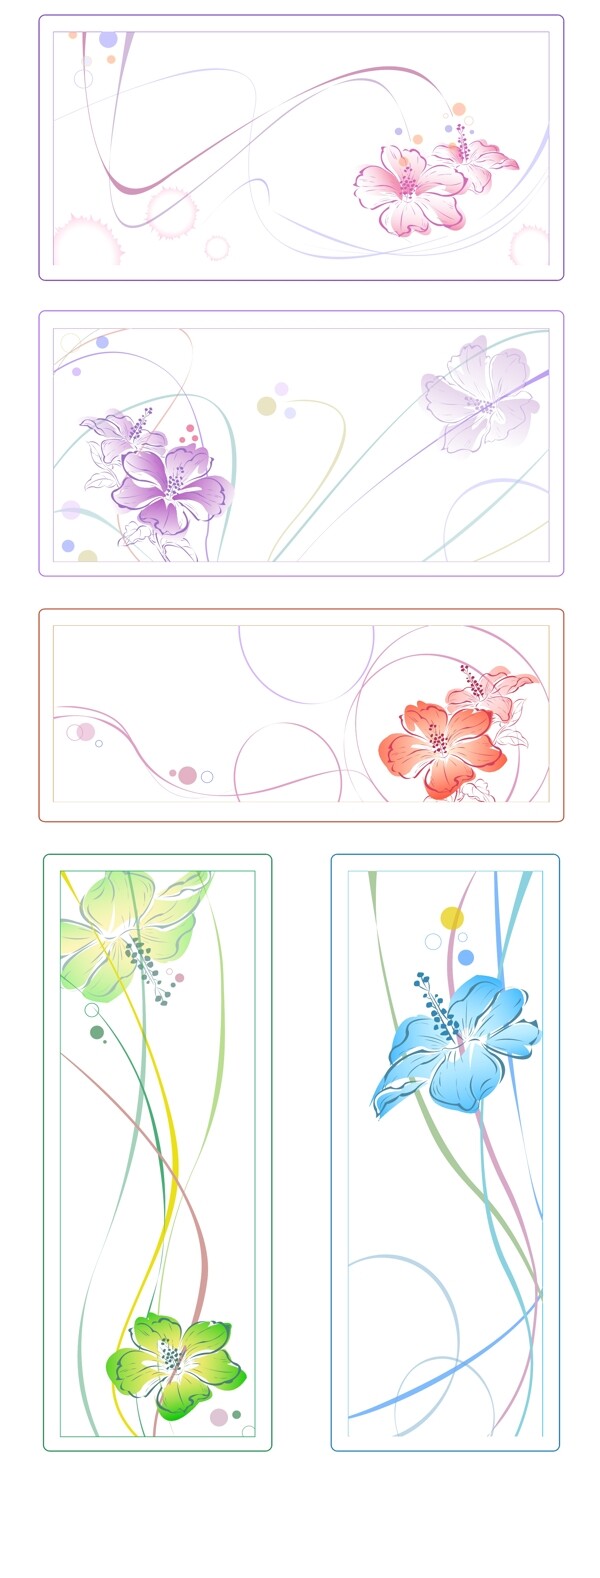 5色水彩风格花卉矢量素材